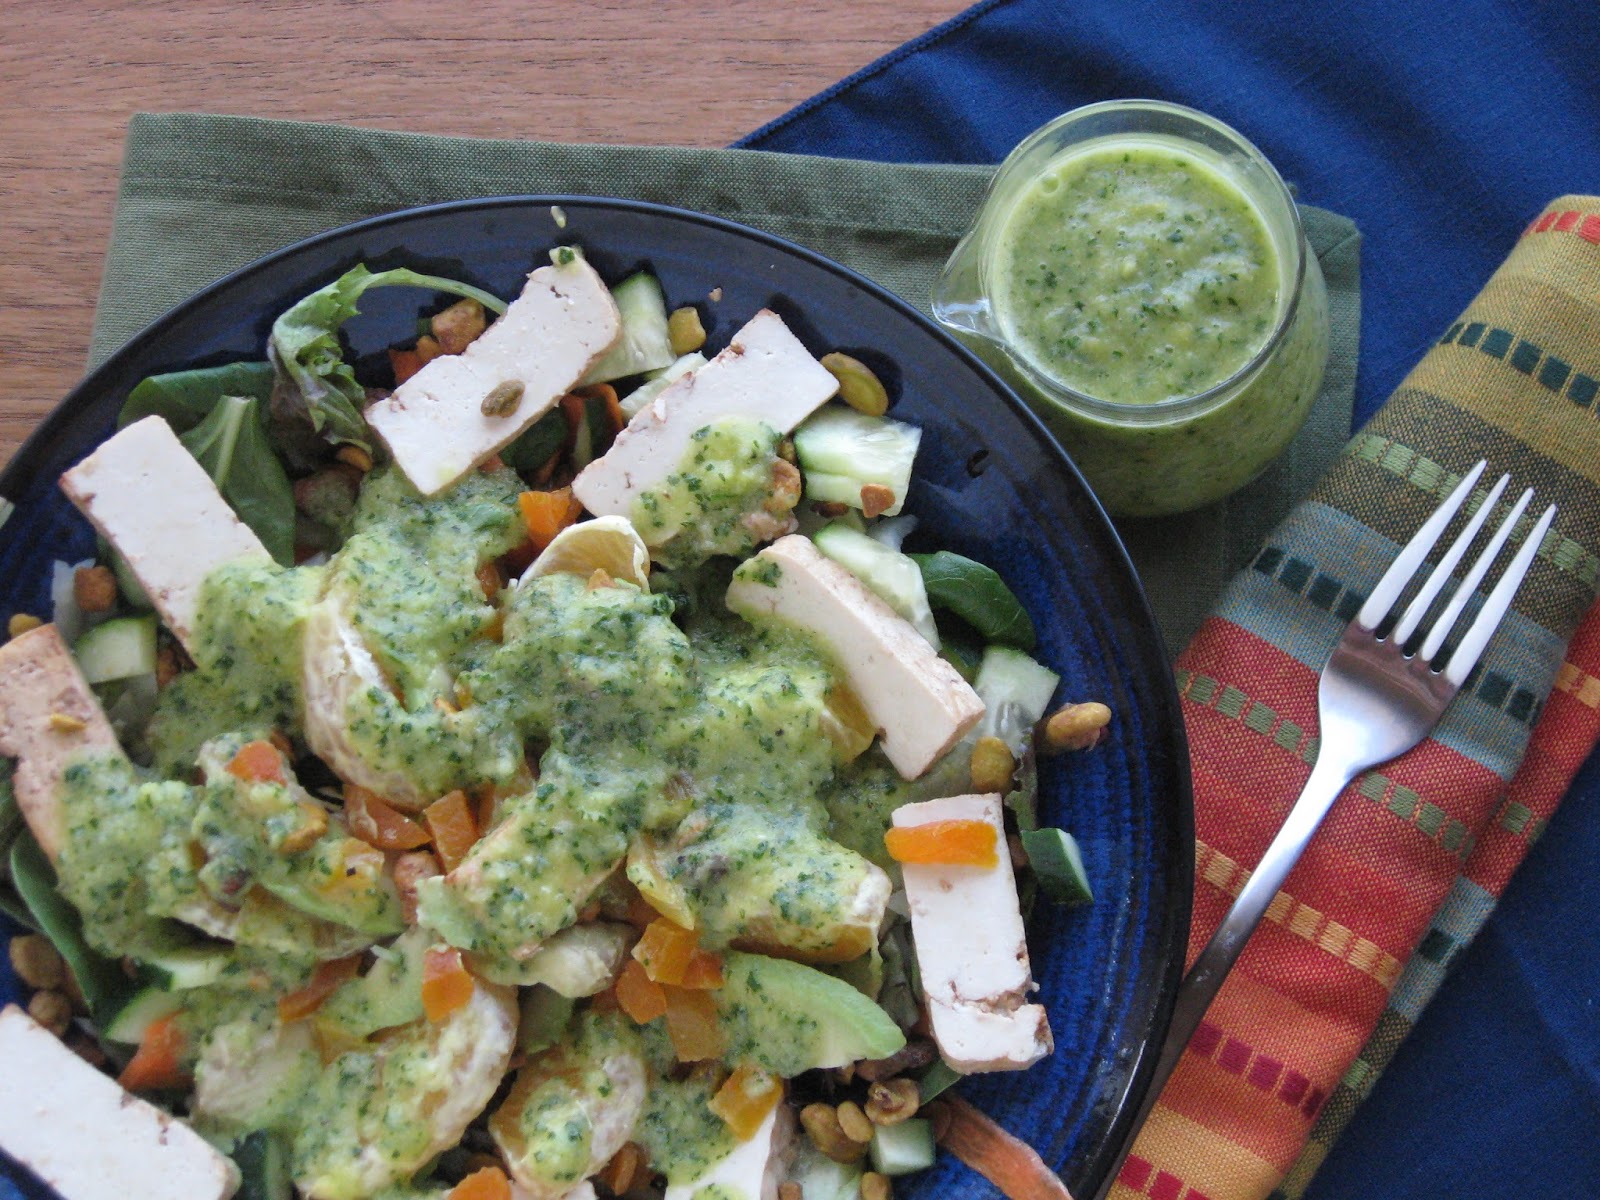 VeganForOne: Pineapple Salad Dressing for One